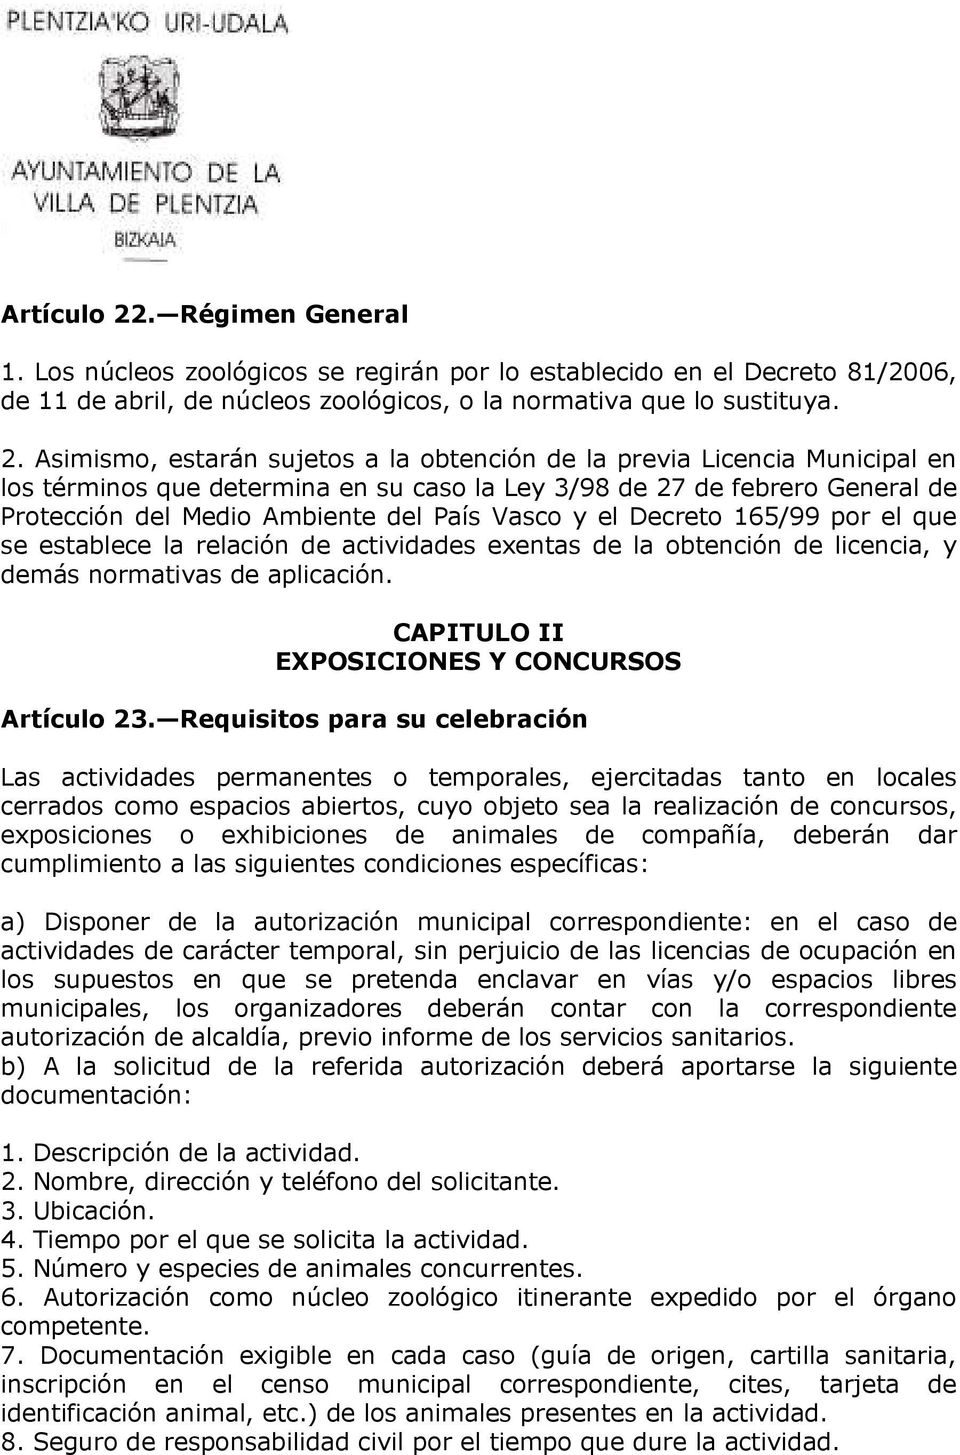 Asimismo, estarán sujetos a la obtención de la previa Licencia Municipal en los términos que determina en su caso la Ley 3/98 de 27 de febrero General de Protección del Medio Ambiente del País Vasco